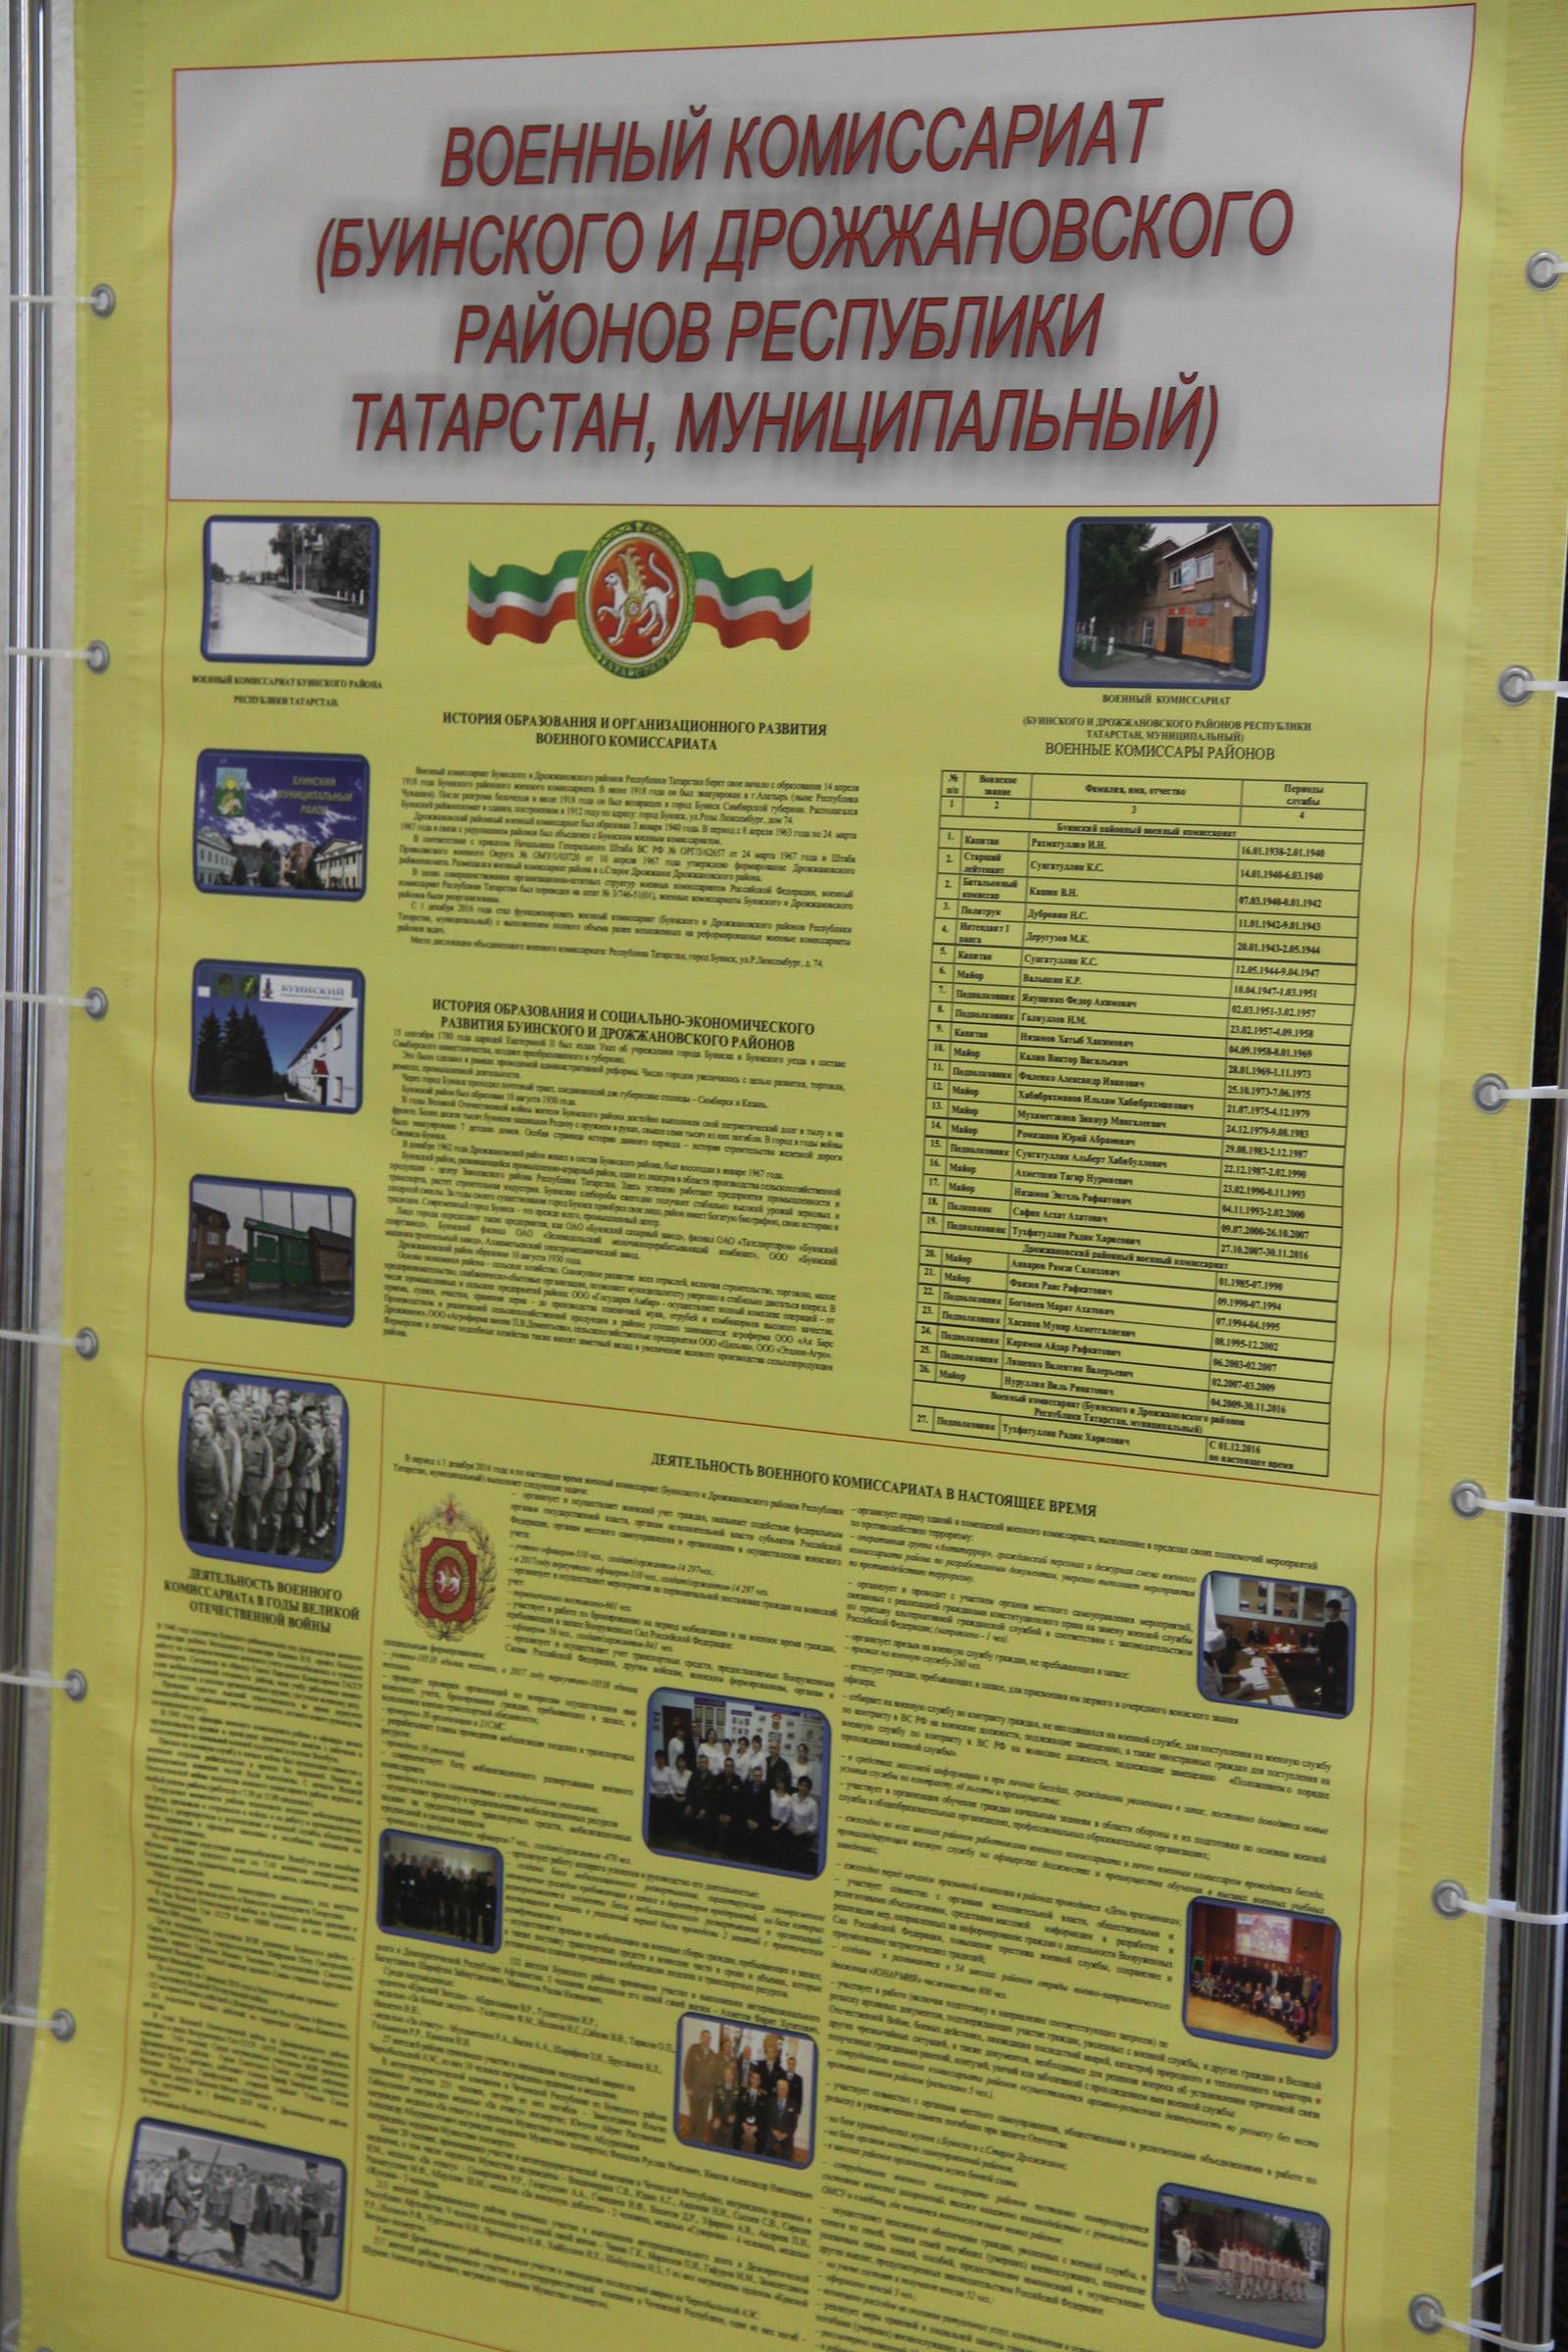 В Буинске прошел торжественное мероприятие посвященное 100-летию со дня образования Военных комиссариатов (фоторепортаж)